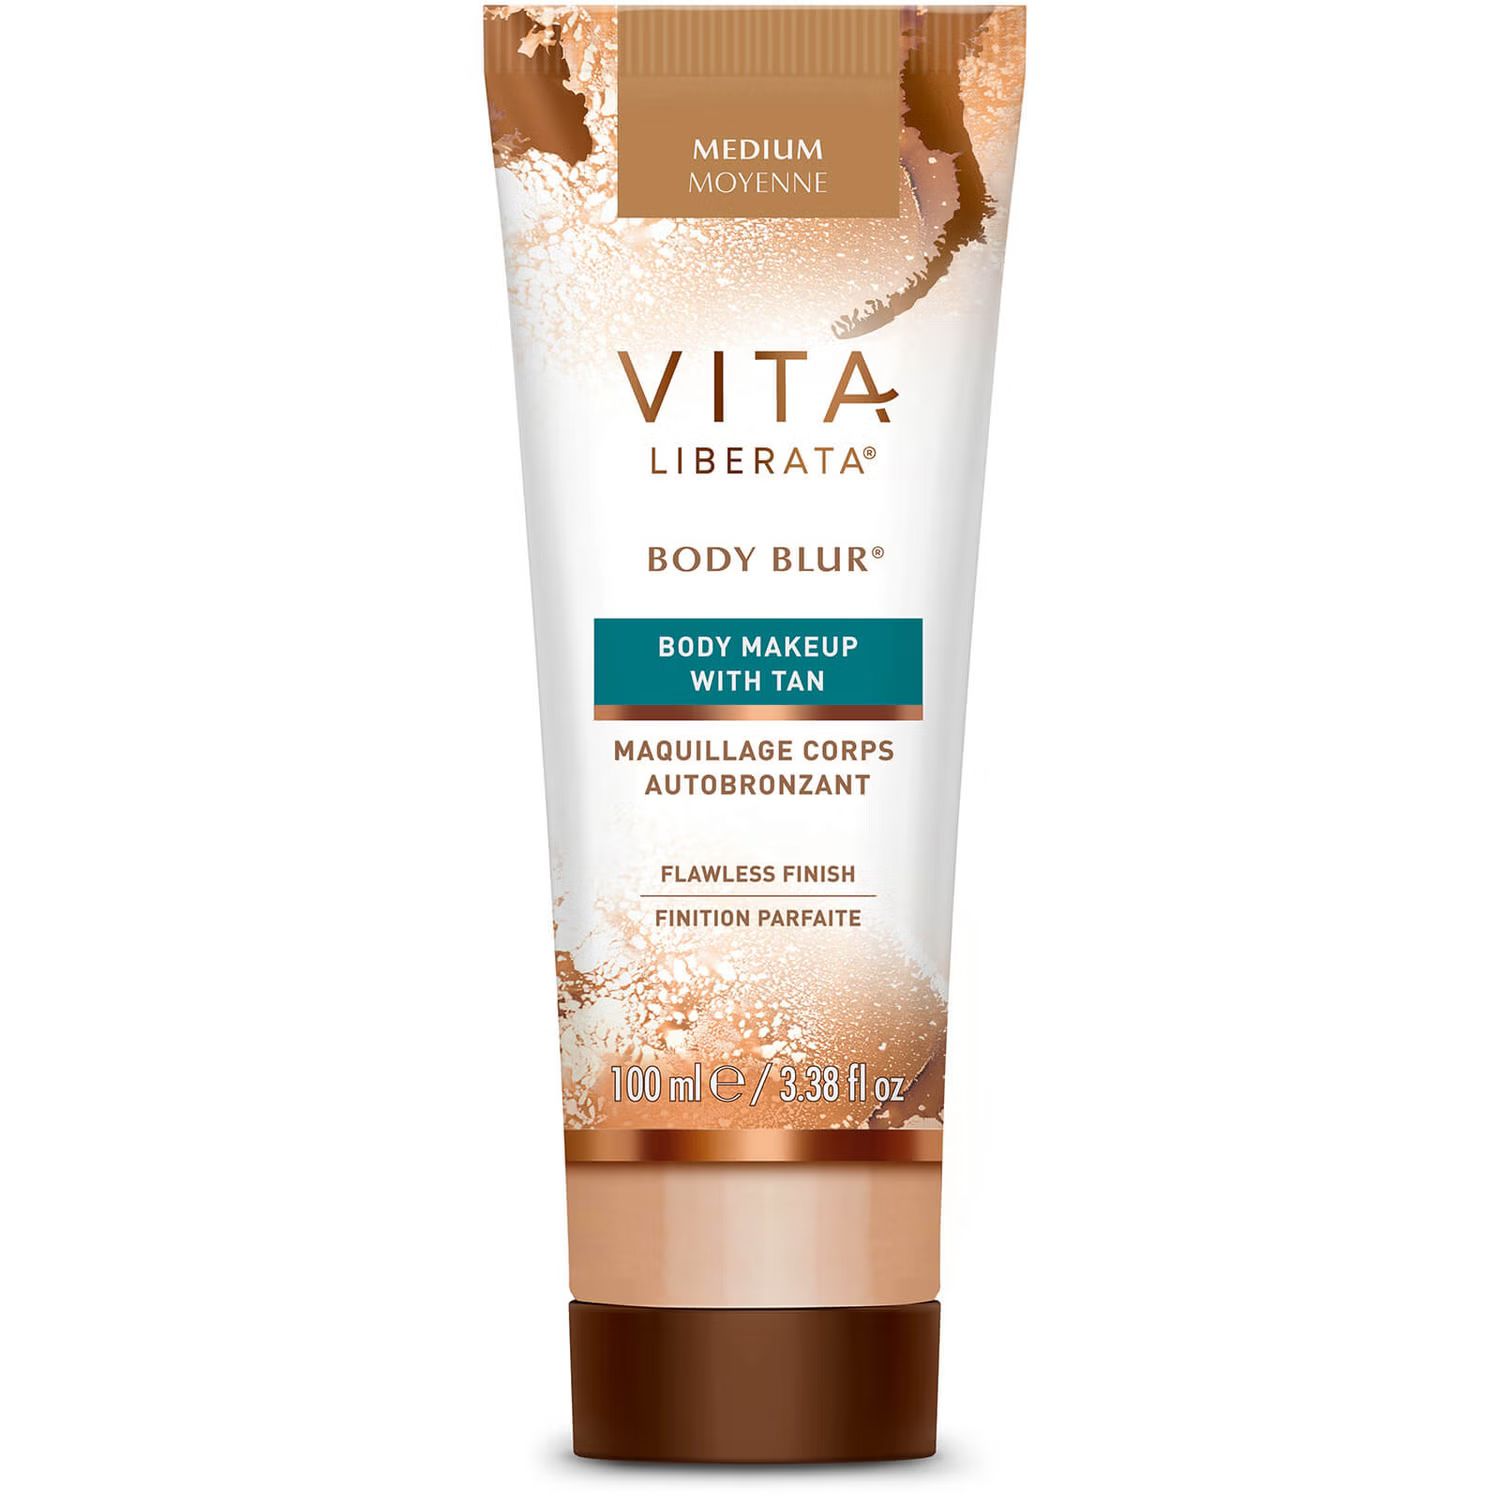 Vita Liberata Body Blur with Tan 100ml (Various Shades) | Dermstore (US)